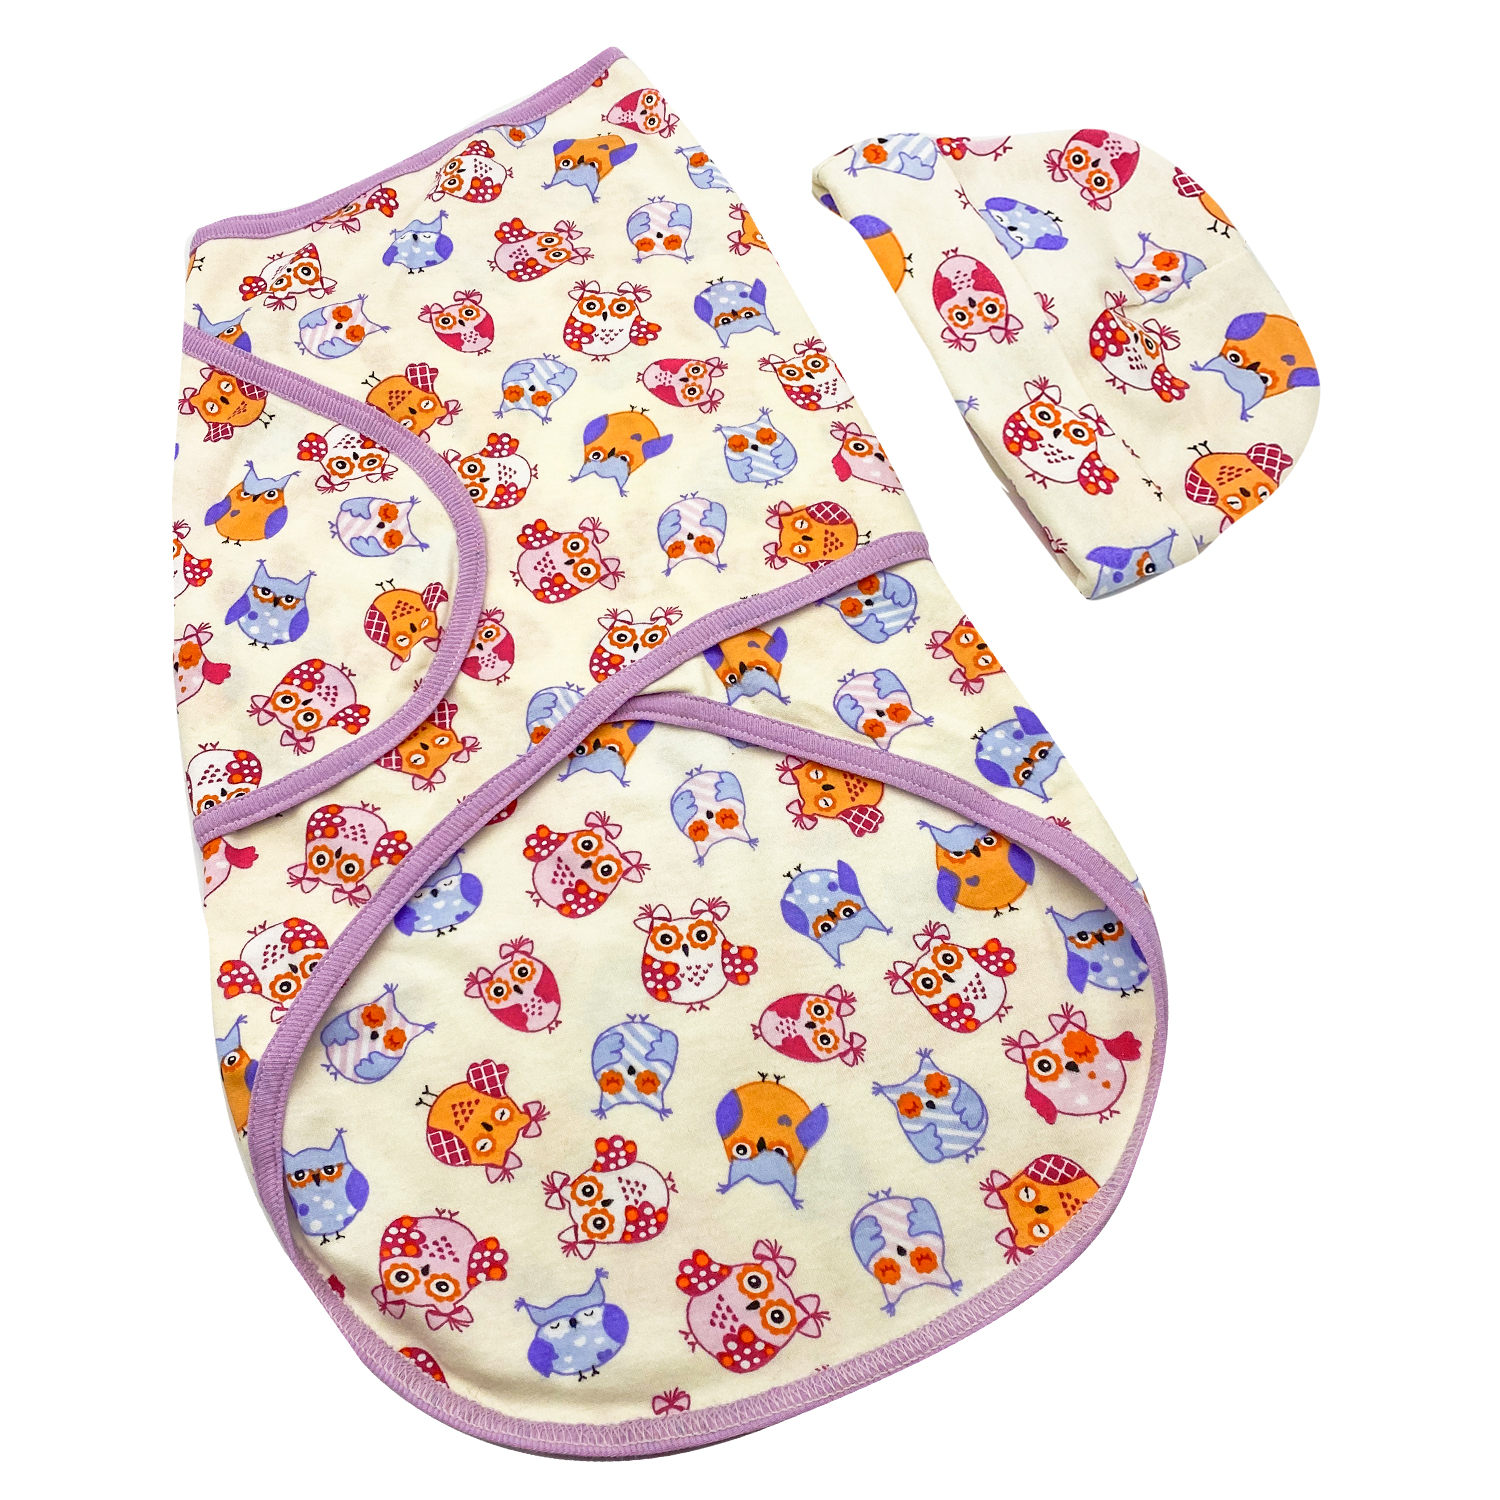 Сшить пеленки для новорожденных своими руками. какие пеленки нужно заготовить для новорожденного: размеры, ткань, назначение